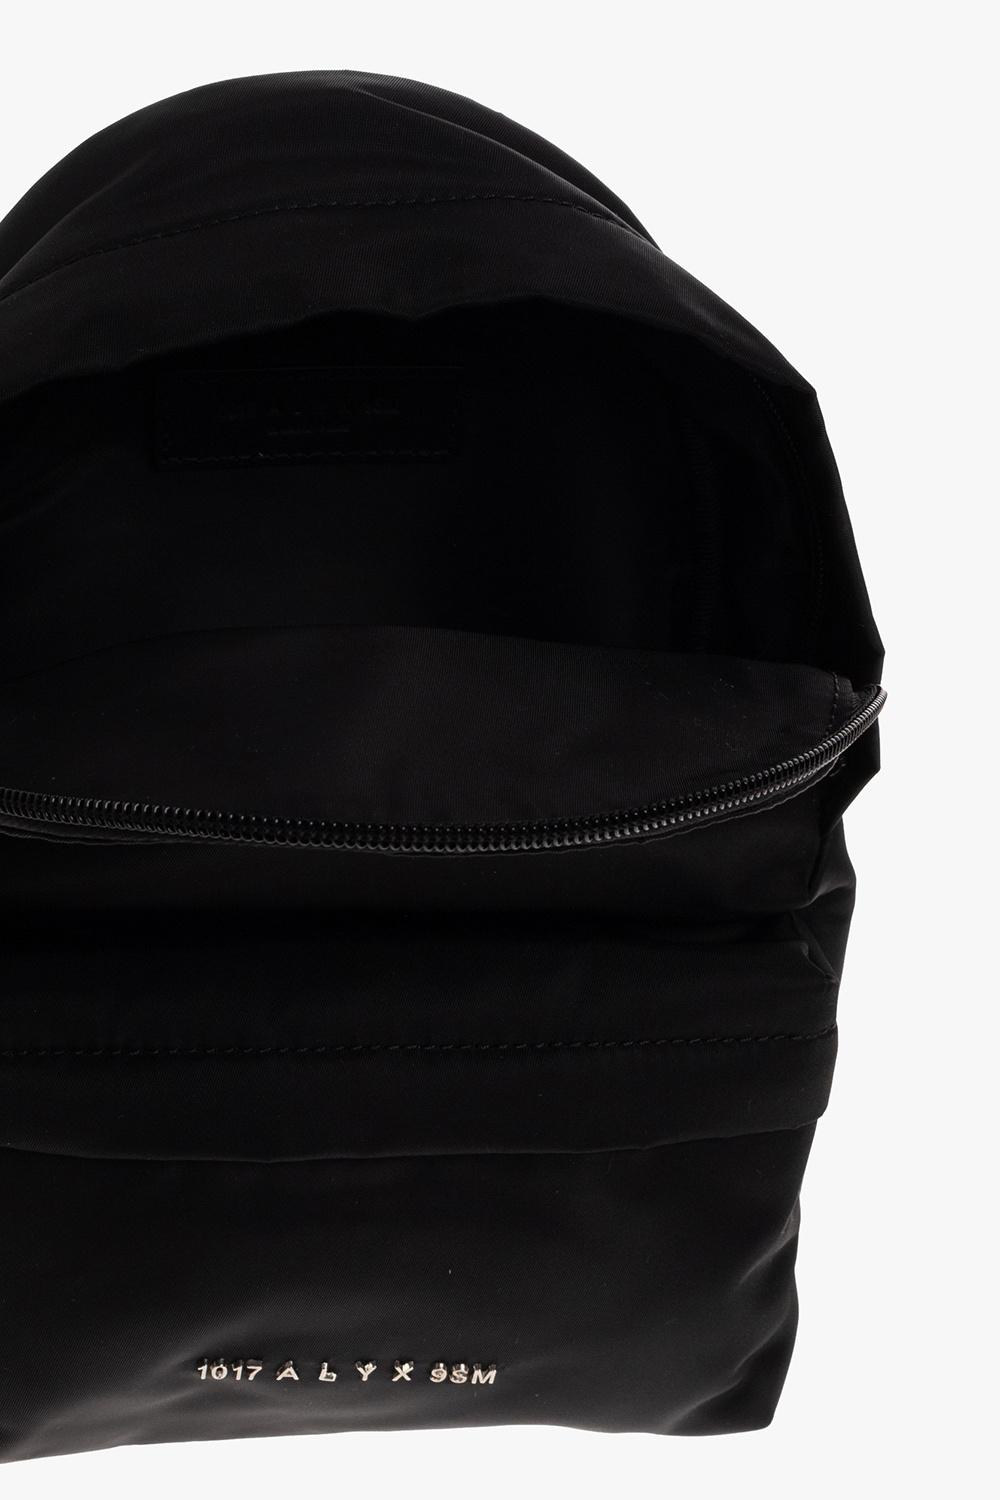 1017 ALYX 9SM One-shoulder backpack